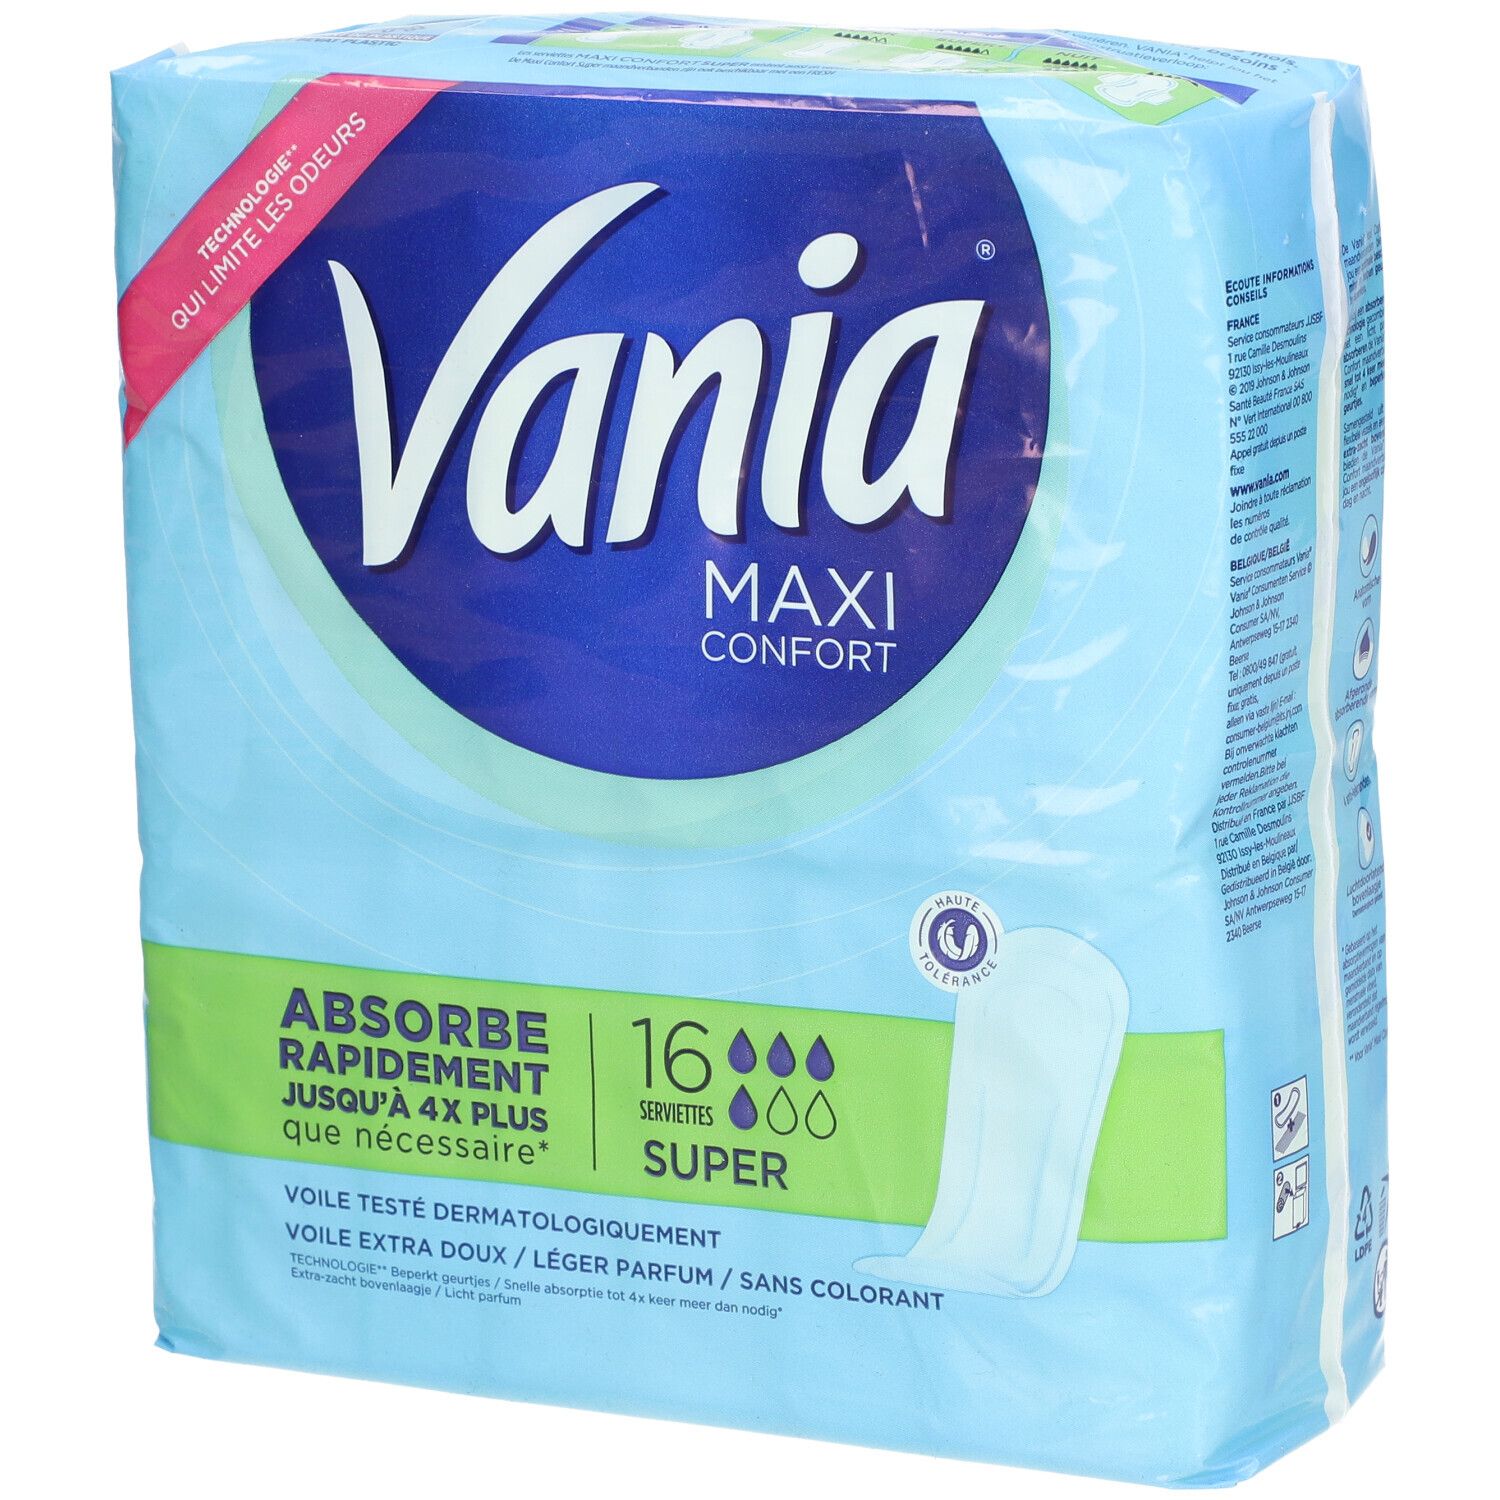 Vania Serviettes Hygiéniques, Maxi Confort, Super, 16 Serviettes